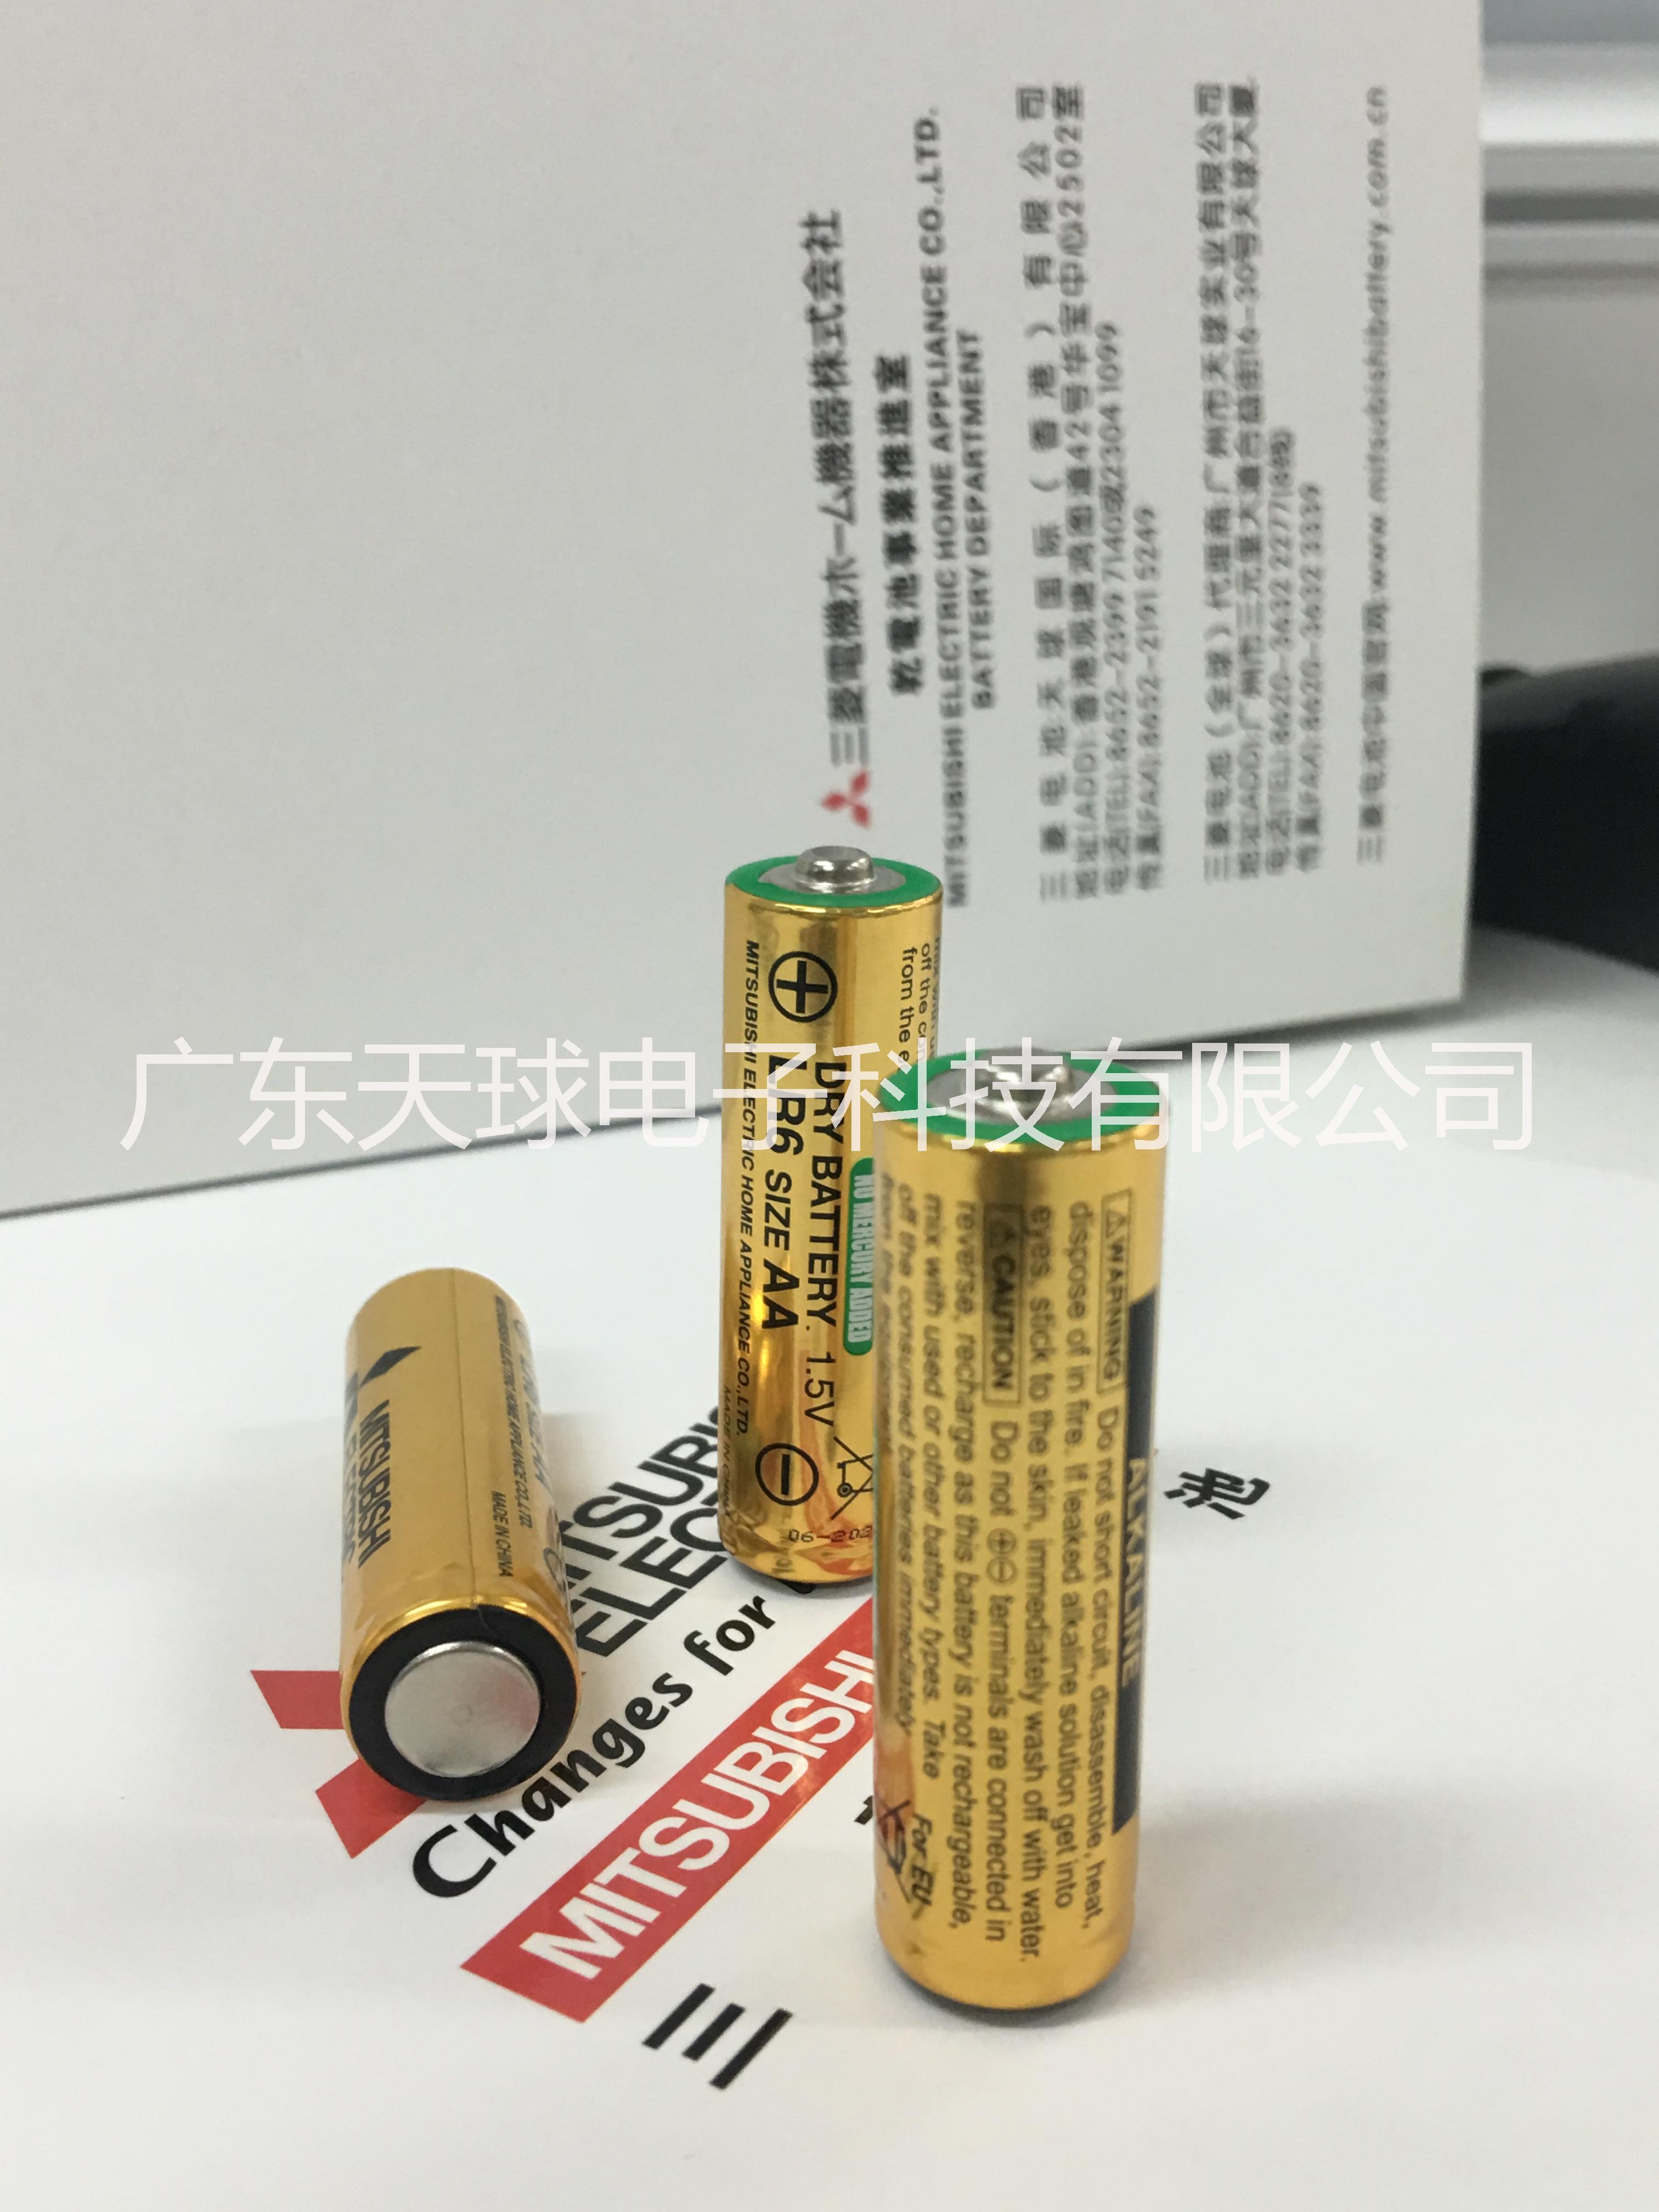 三菱电池LR6 AA 5号干电池 三菱电池LR6 三菱电池AA 5号干电池